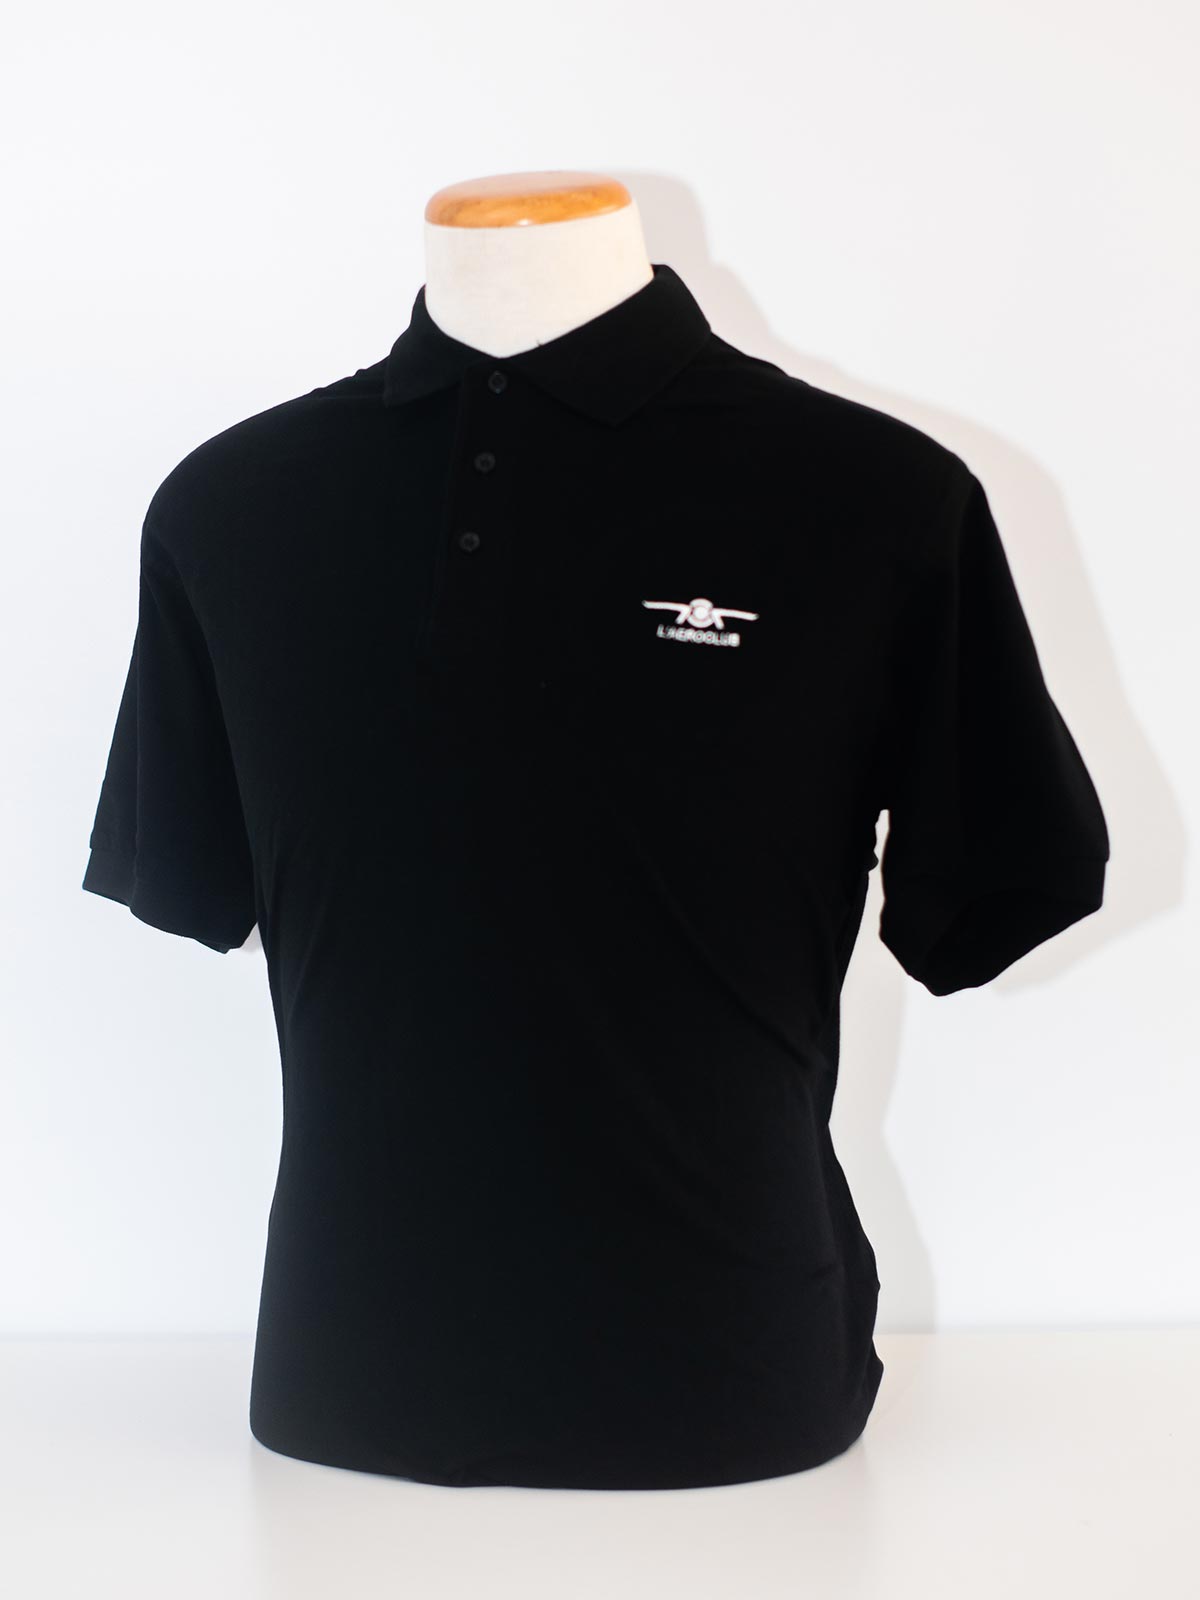 Unisex Polo Shirt “Aeroclub” – Aeroclub Pilot Shop